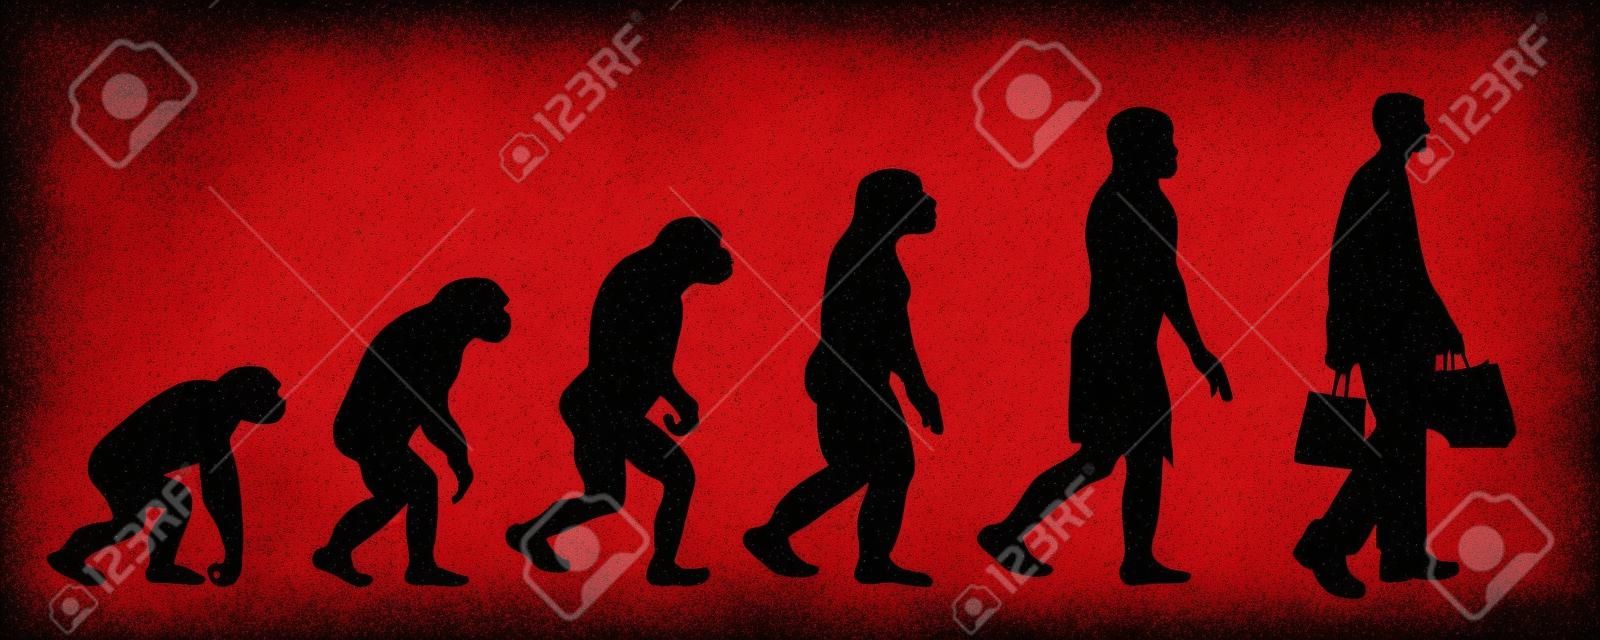 Gemalte Theorie der Evolution der Frau. Vektorsilhouette des Homo Sapiens. Symbol vom Affen zum Einkaufen.